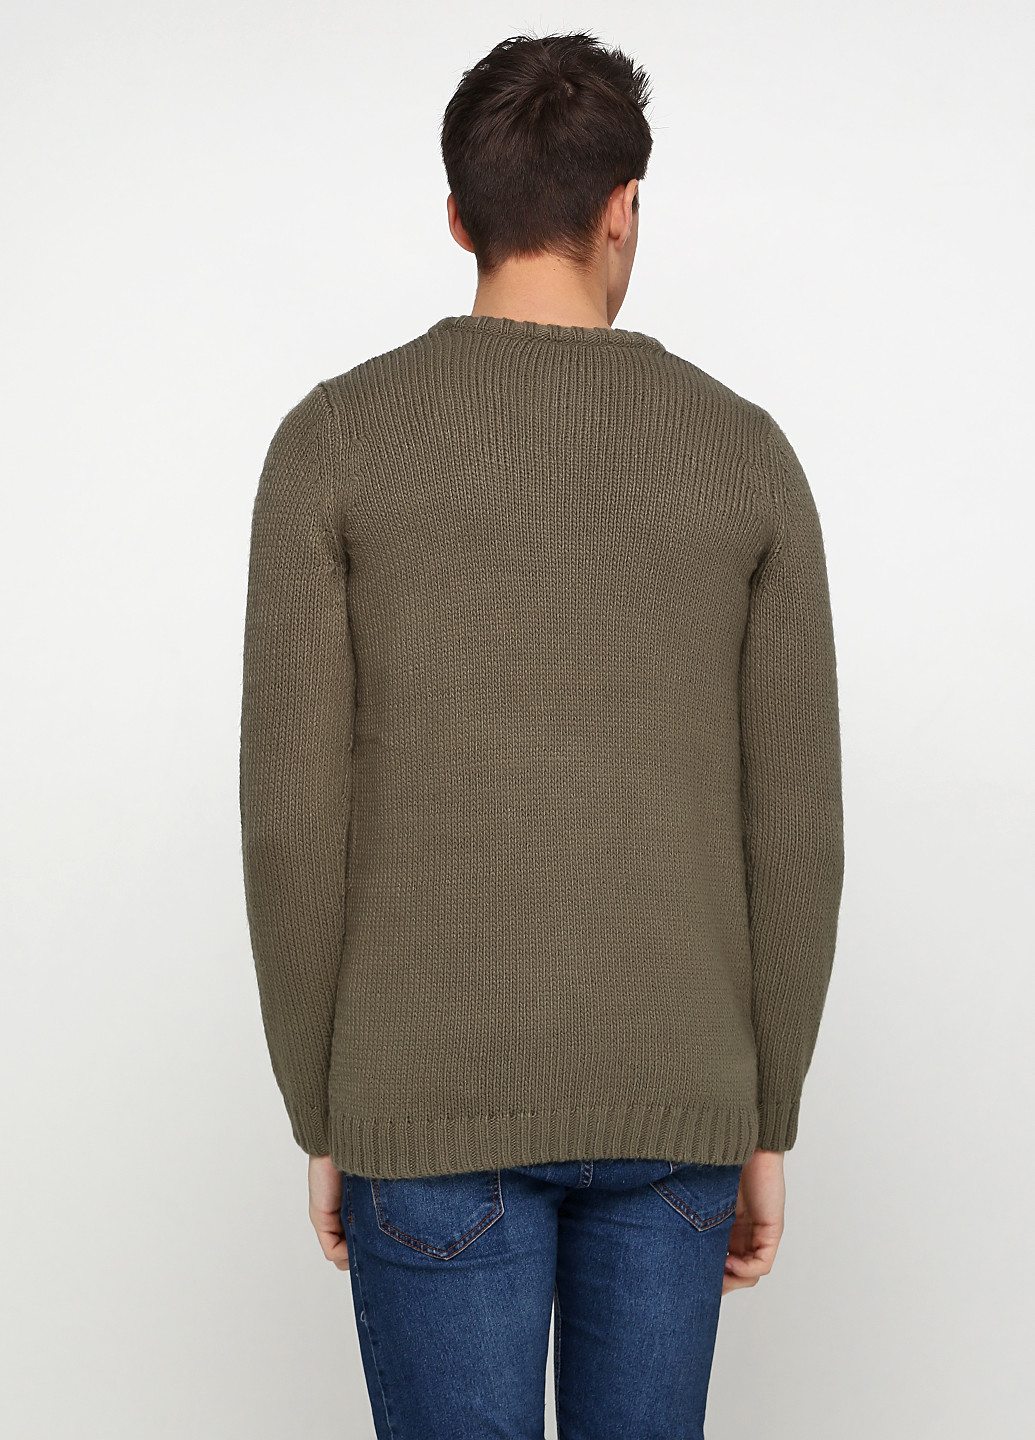 Оливково-зеленый демисезонный пуловер пуловер Long Island